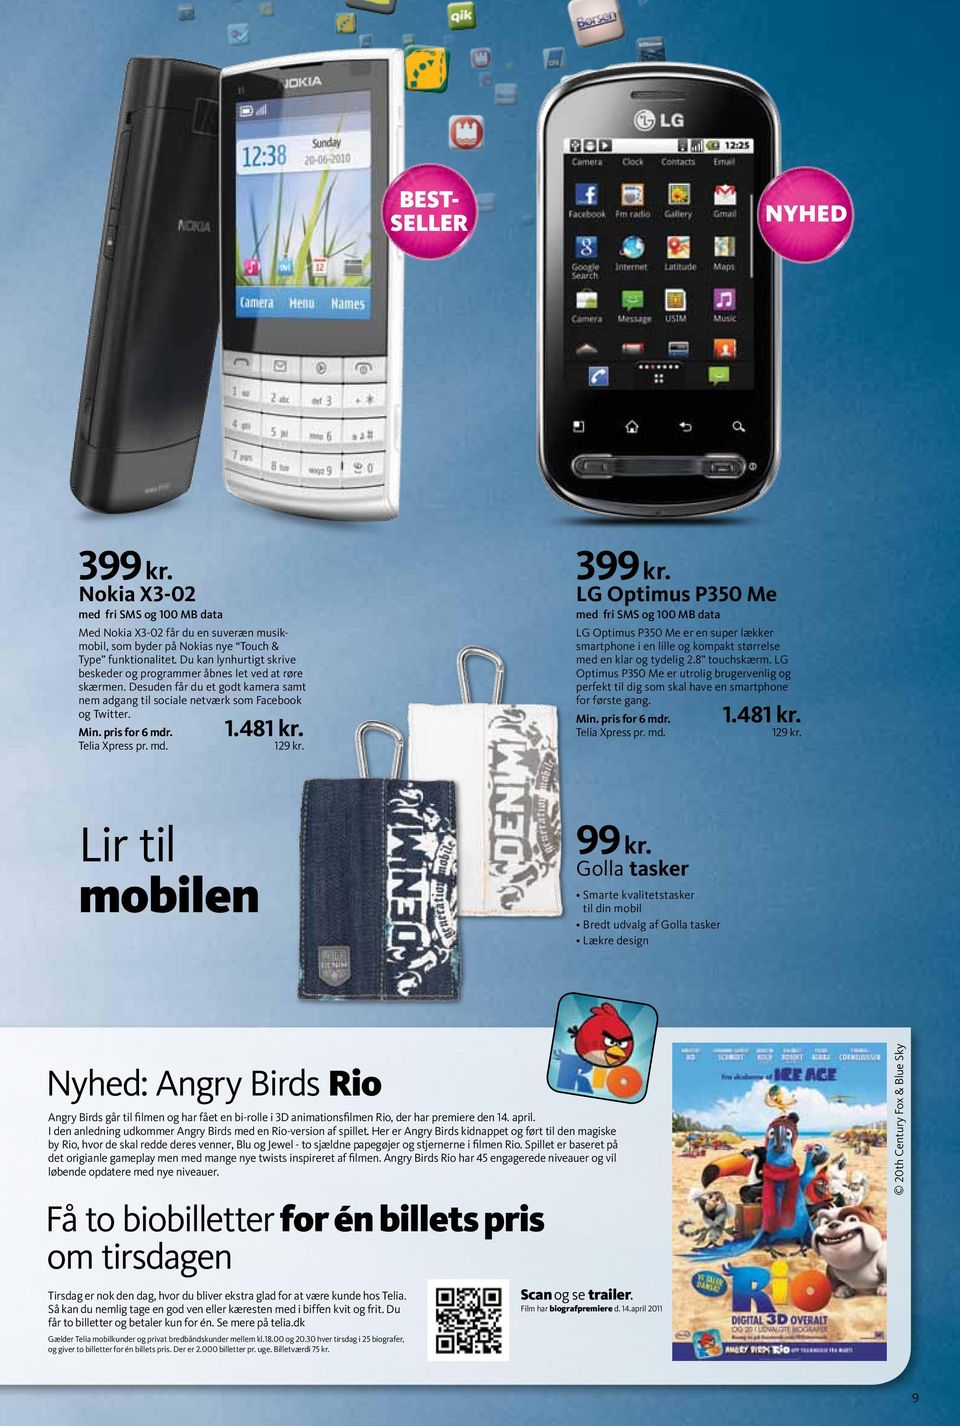 49 kr. Find forårets nyheder hos Telia. SMS og Vind Sony Ericsson ...